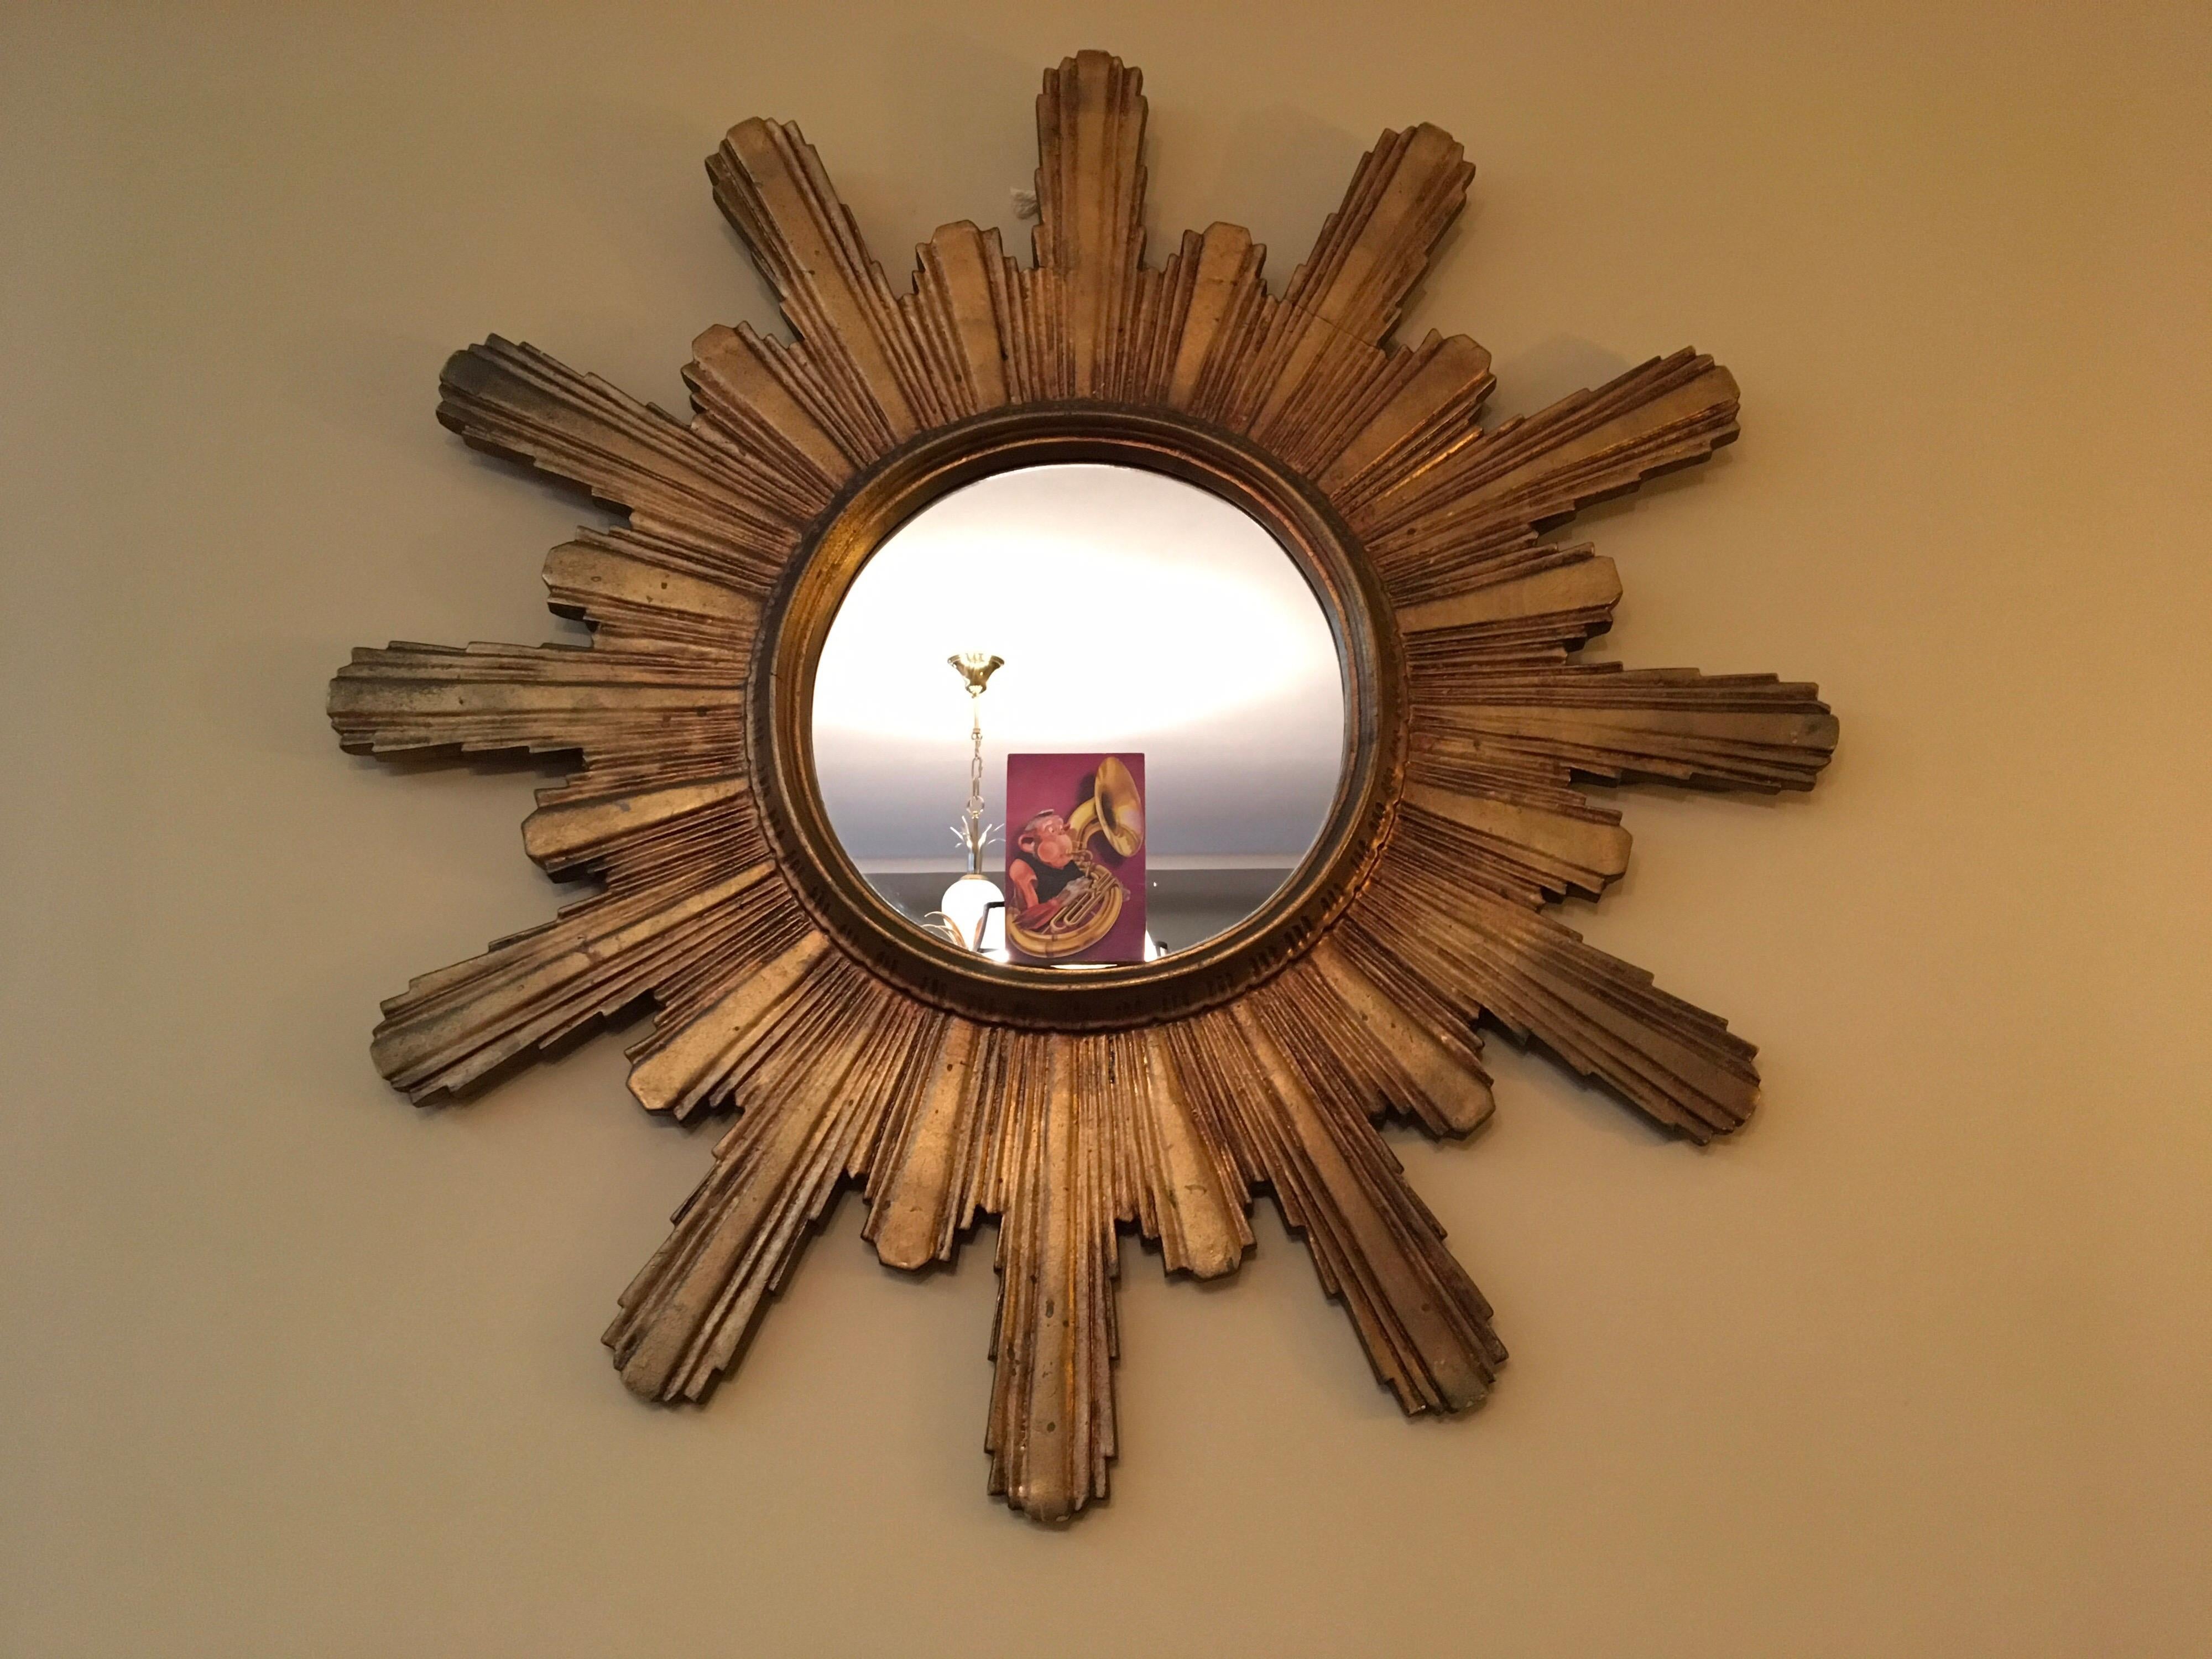 Spectaculaire grand miroir en bois doré en forme de soleil ou miroir Starbust. 
Ce miroir des années 1950 a un cadre en bois sculpté et doré.
Le diamètre total de ce grand miroir en bois en forme de soleil est de 39.37 pouces - 100 cm !
Le verre du